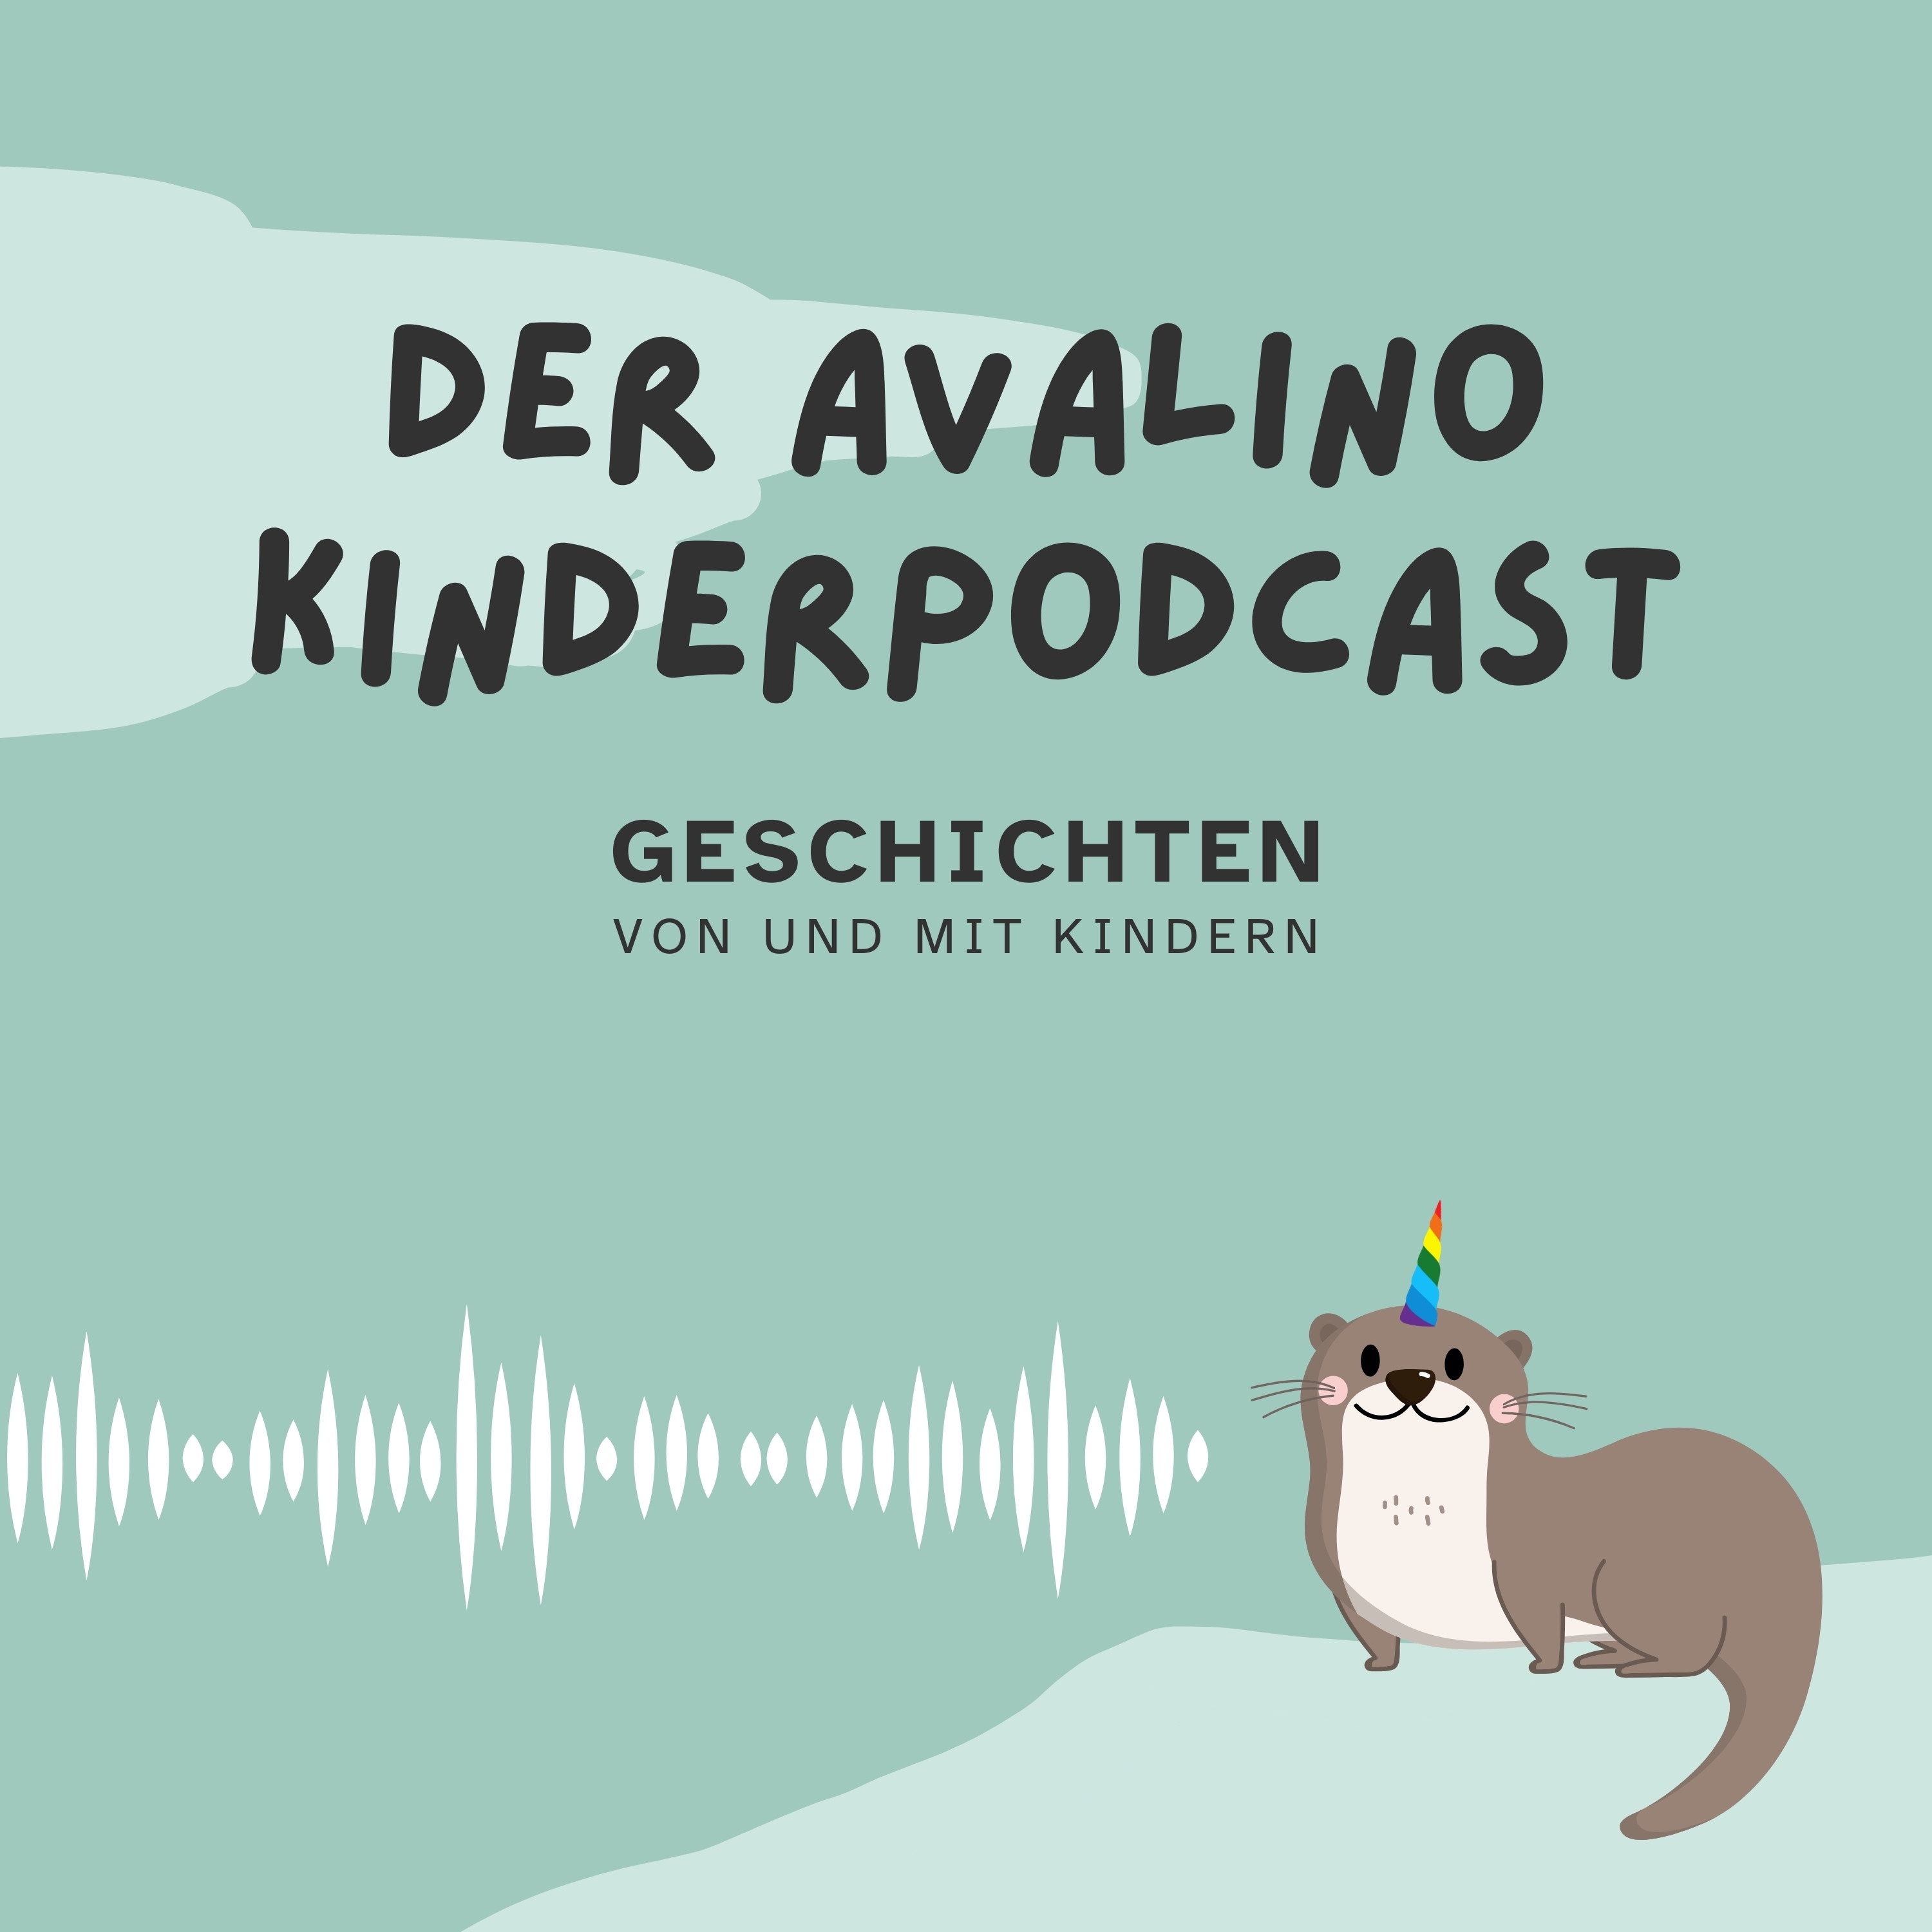 Höre Der Avalino Kinderpodcast in der App.